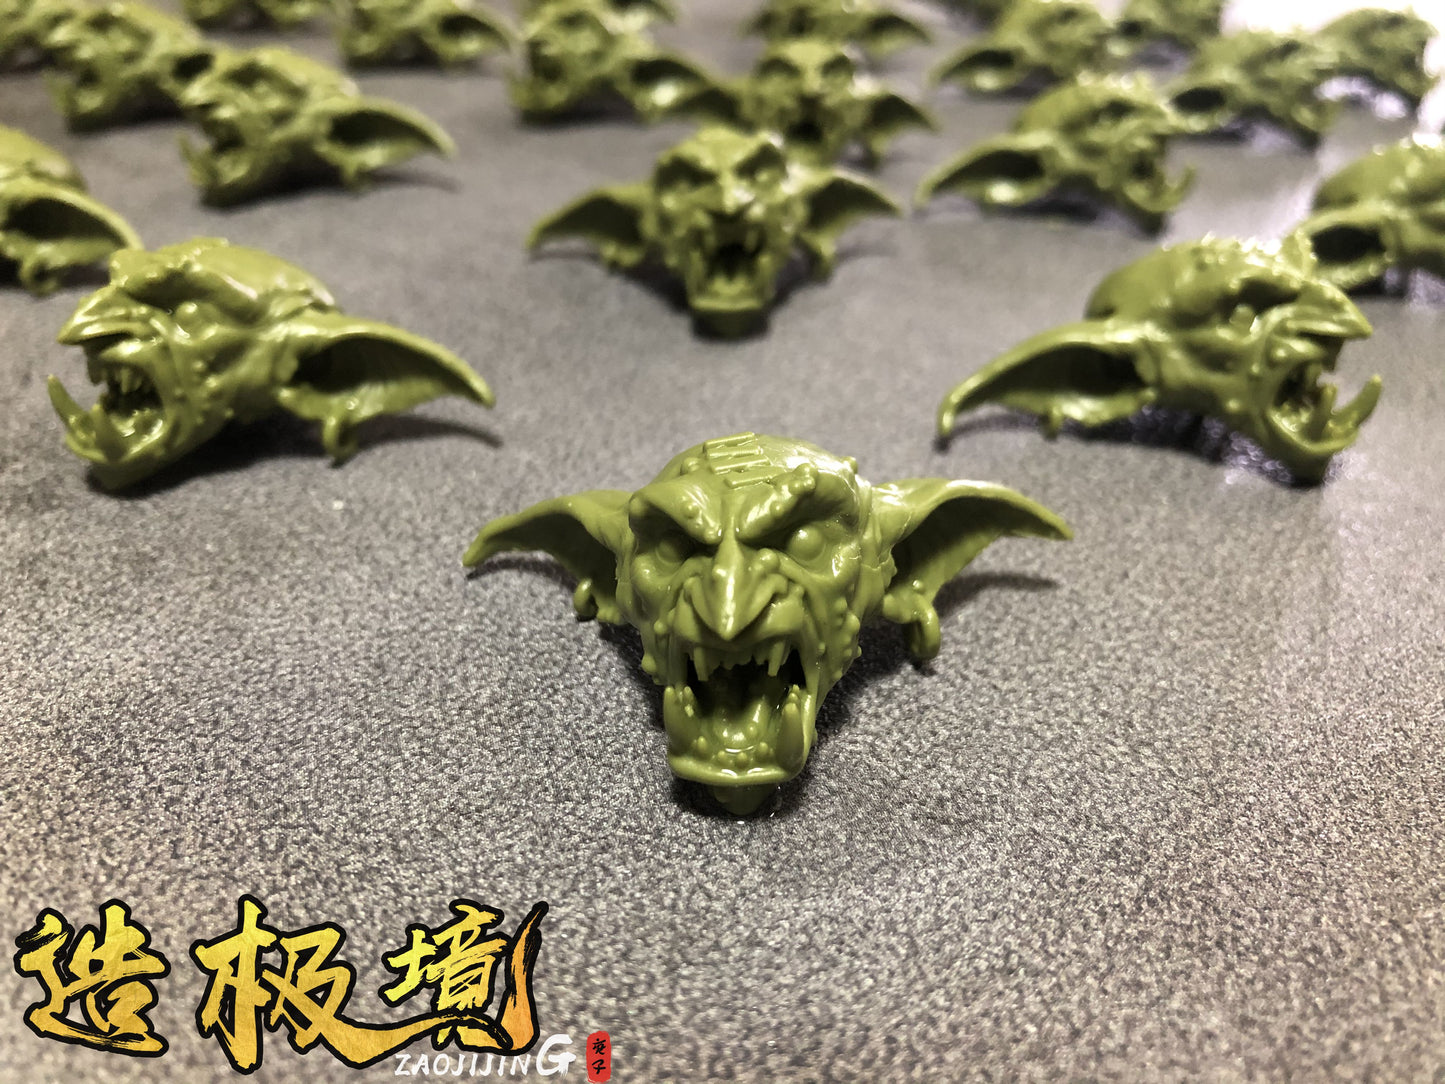 Head Carving - Battle Roar Goblin